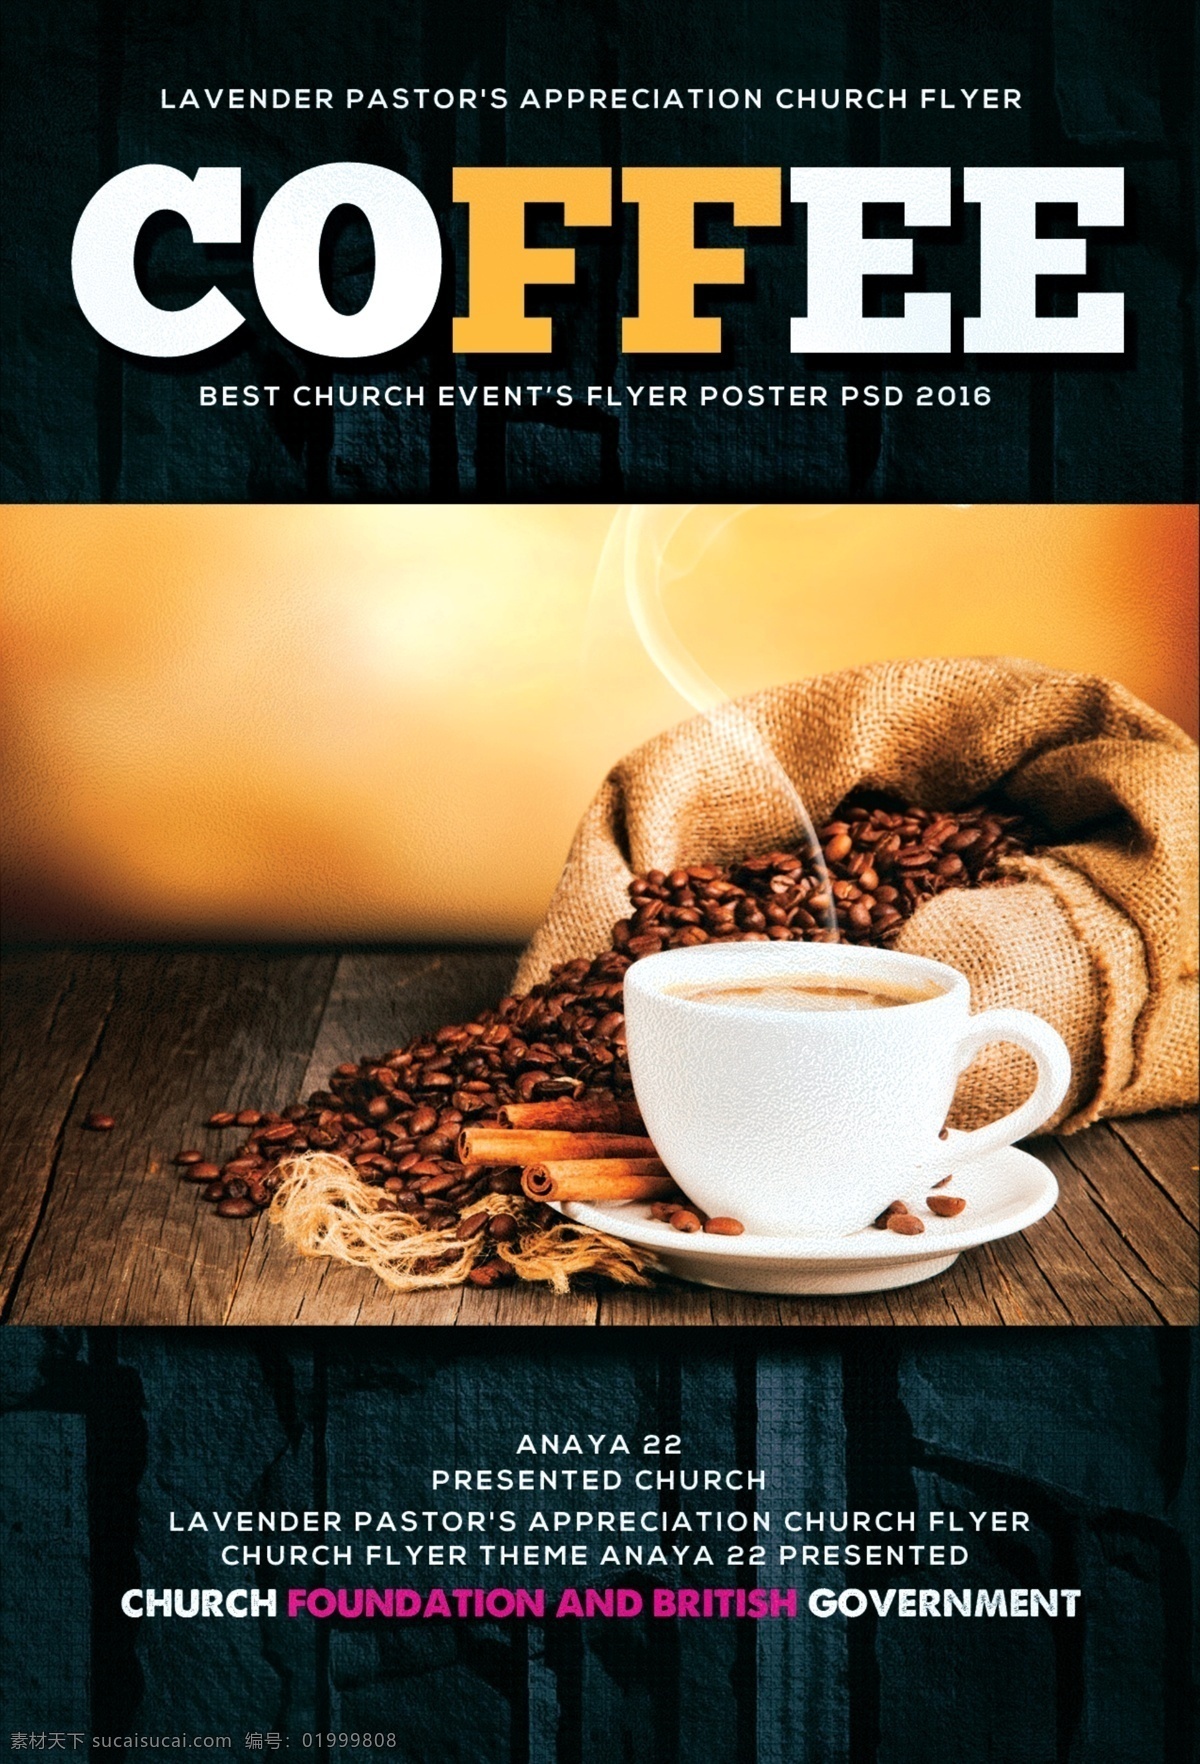 咖啡传单海报 广告 阿拉比卡 豆 混合 咖啡店 咖啡馆传单 capuchino 咖啡 咖啡传单 咖啡菜单 咖啡风格 传单 菜单 小册子 打印 店